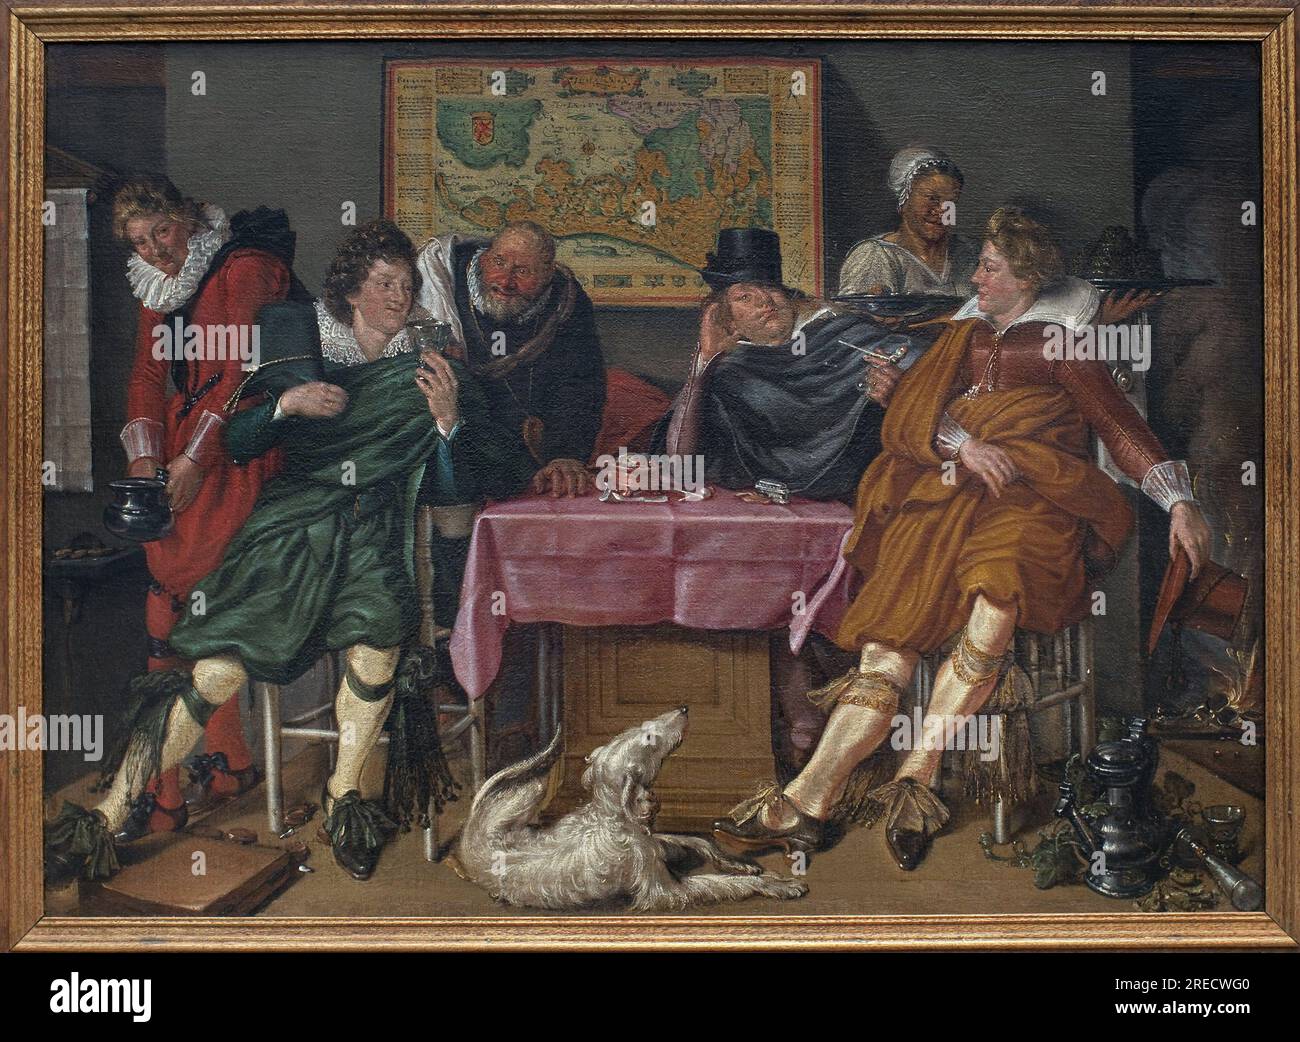 Joyeuse compagnie. Peinture de Willem Pietersz Buytewech (1591 ou 1592-1624), huile sur toile, vers 1620. Art neerlandais, 17e siecle. Musee des Beaux Arts de Rotterdam (Pays Bas). Stock Photo